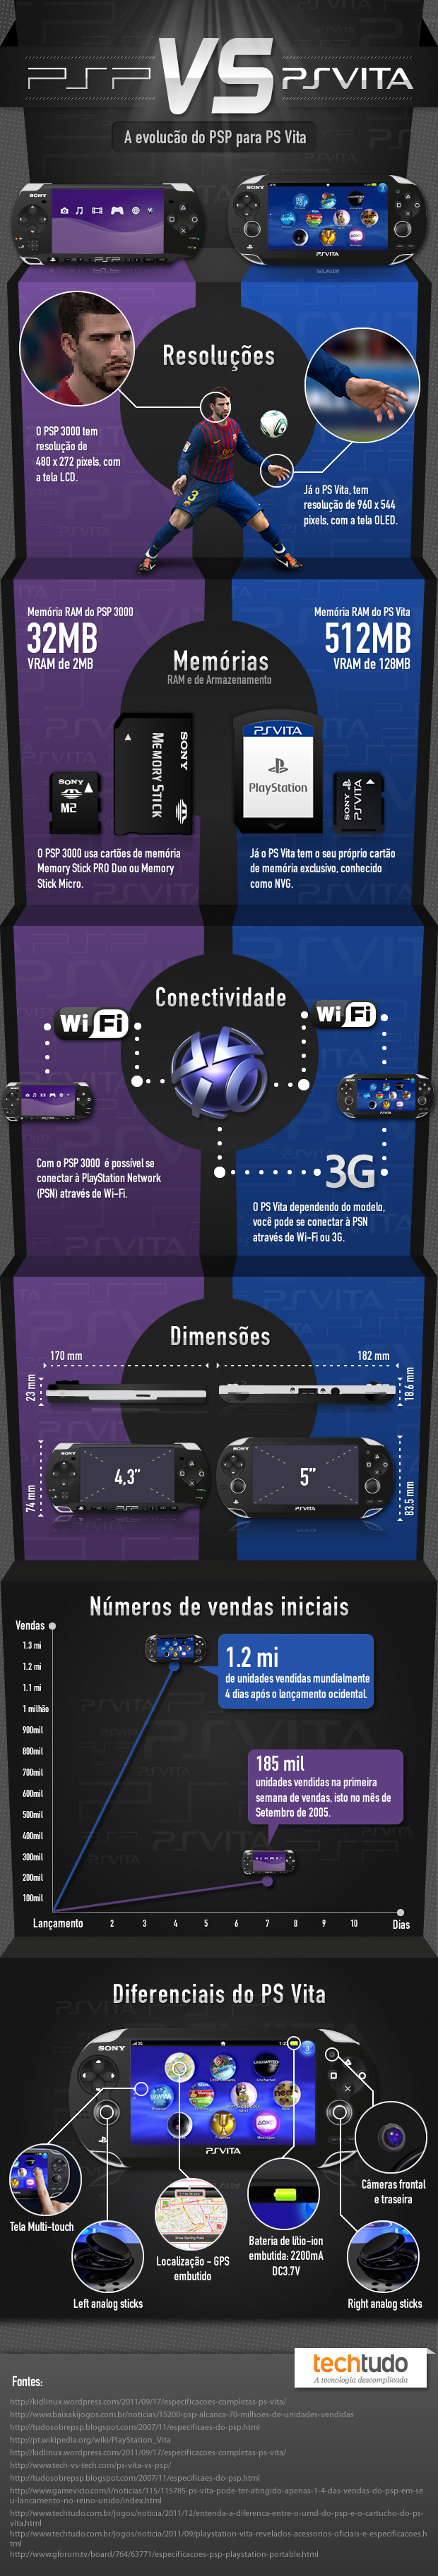 Comparação entre PSP e PS Vita (Foto: TechTudo)